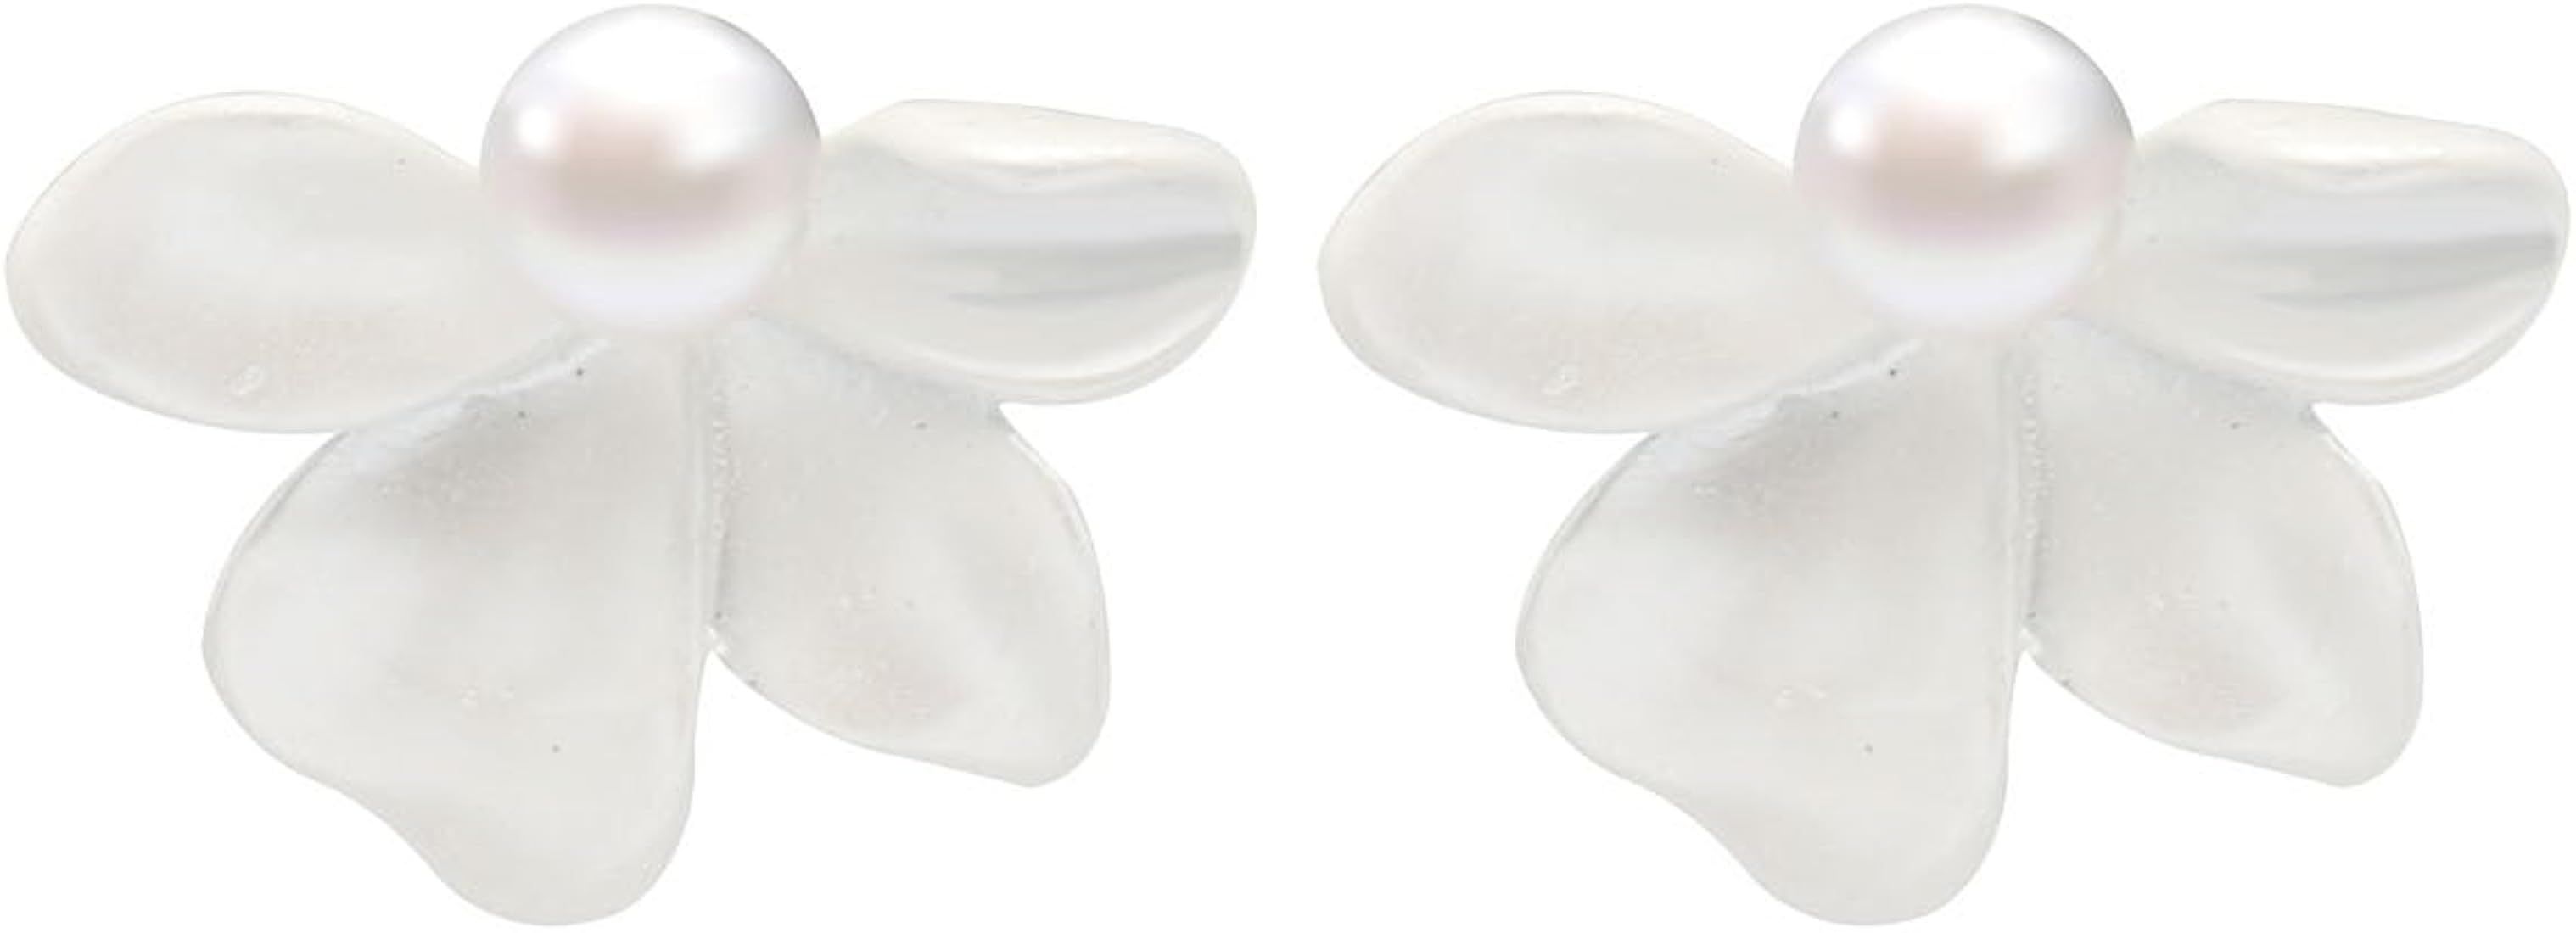 Simple Cute Petal Flower Stud Earrings for Women Girls,Hypoallergenic Lightweight Artificial Pear... | Amazon (US)